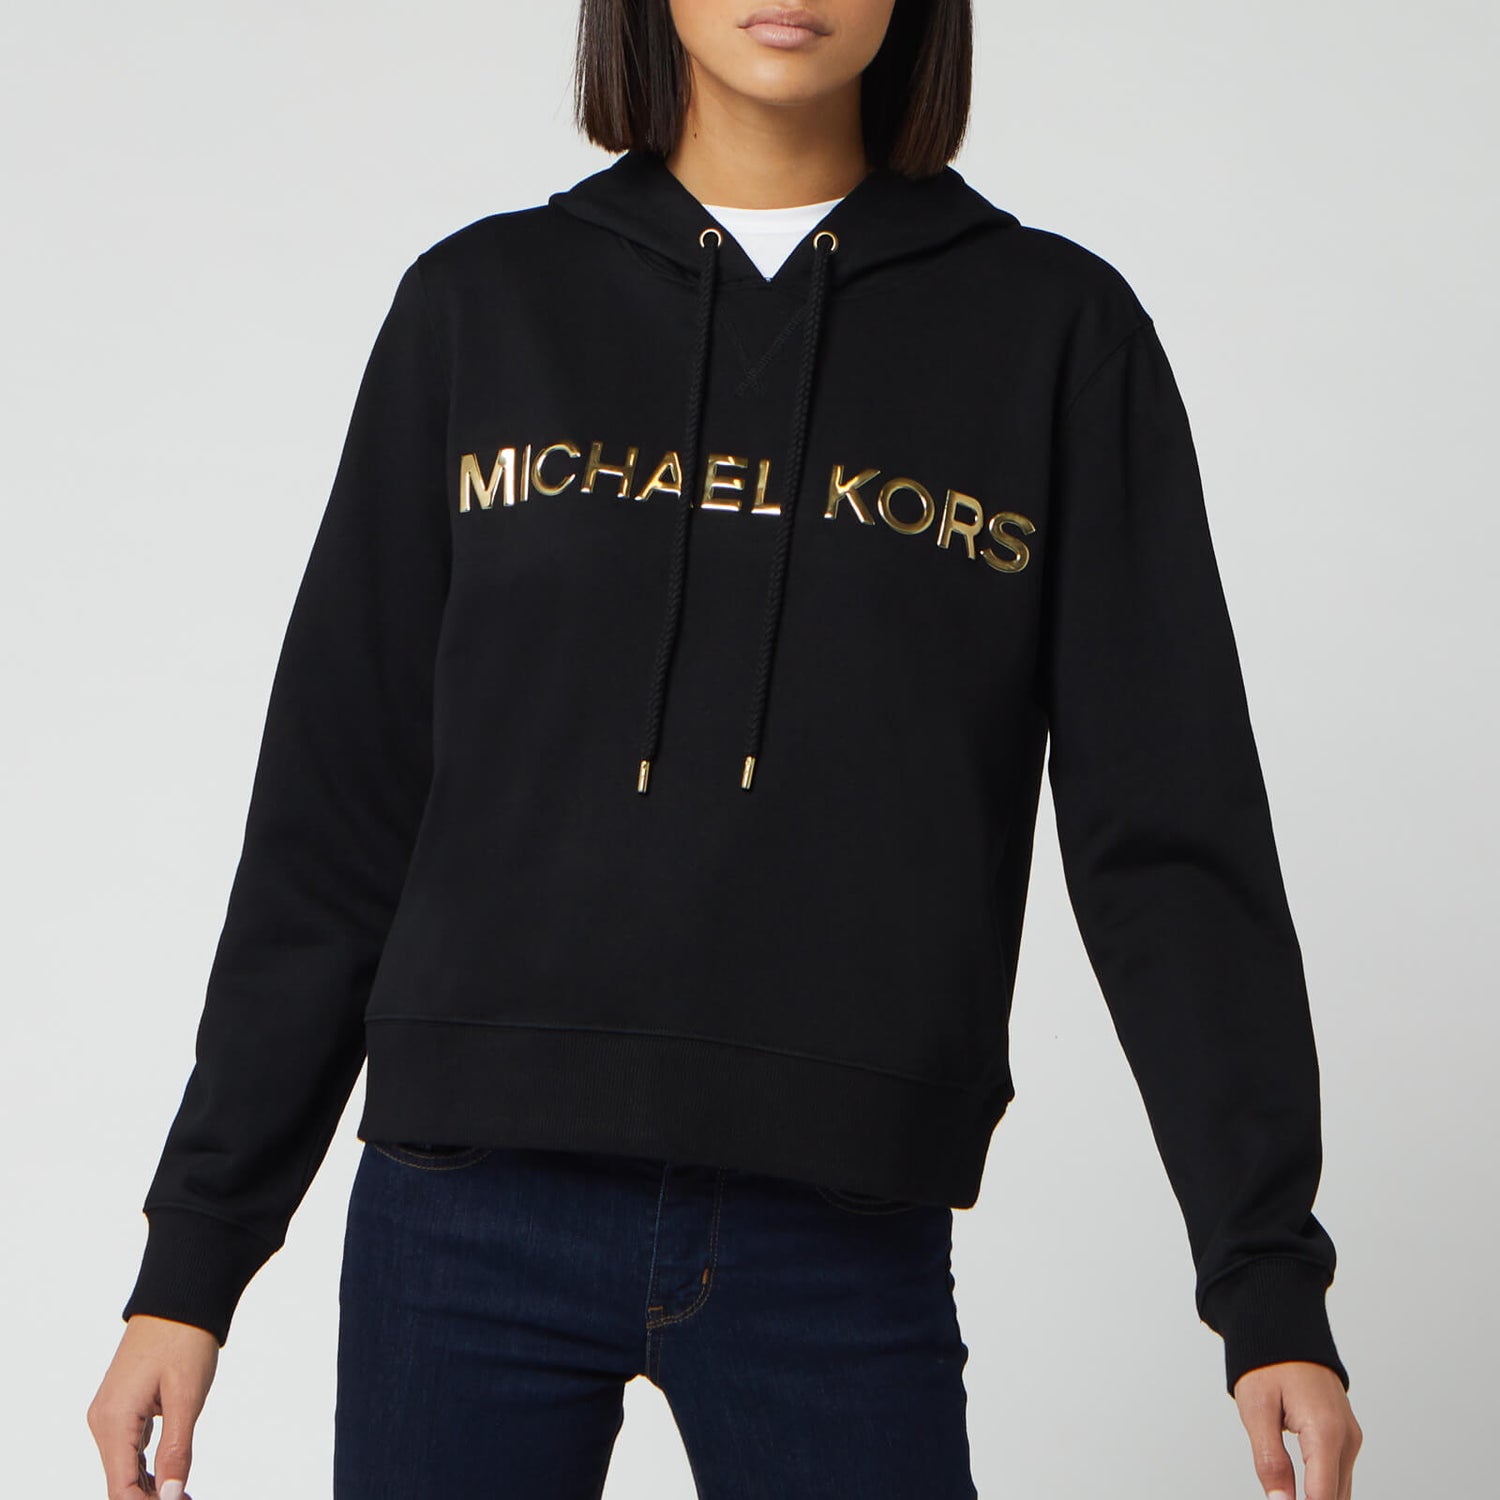 Cập nhật 59+ về hoodie michael kors